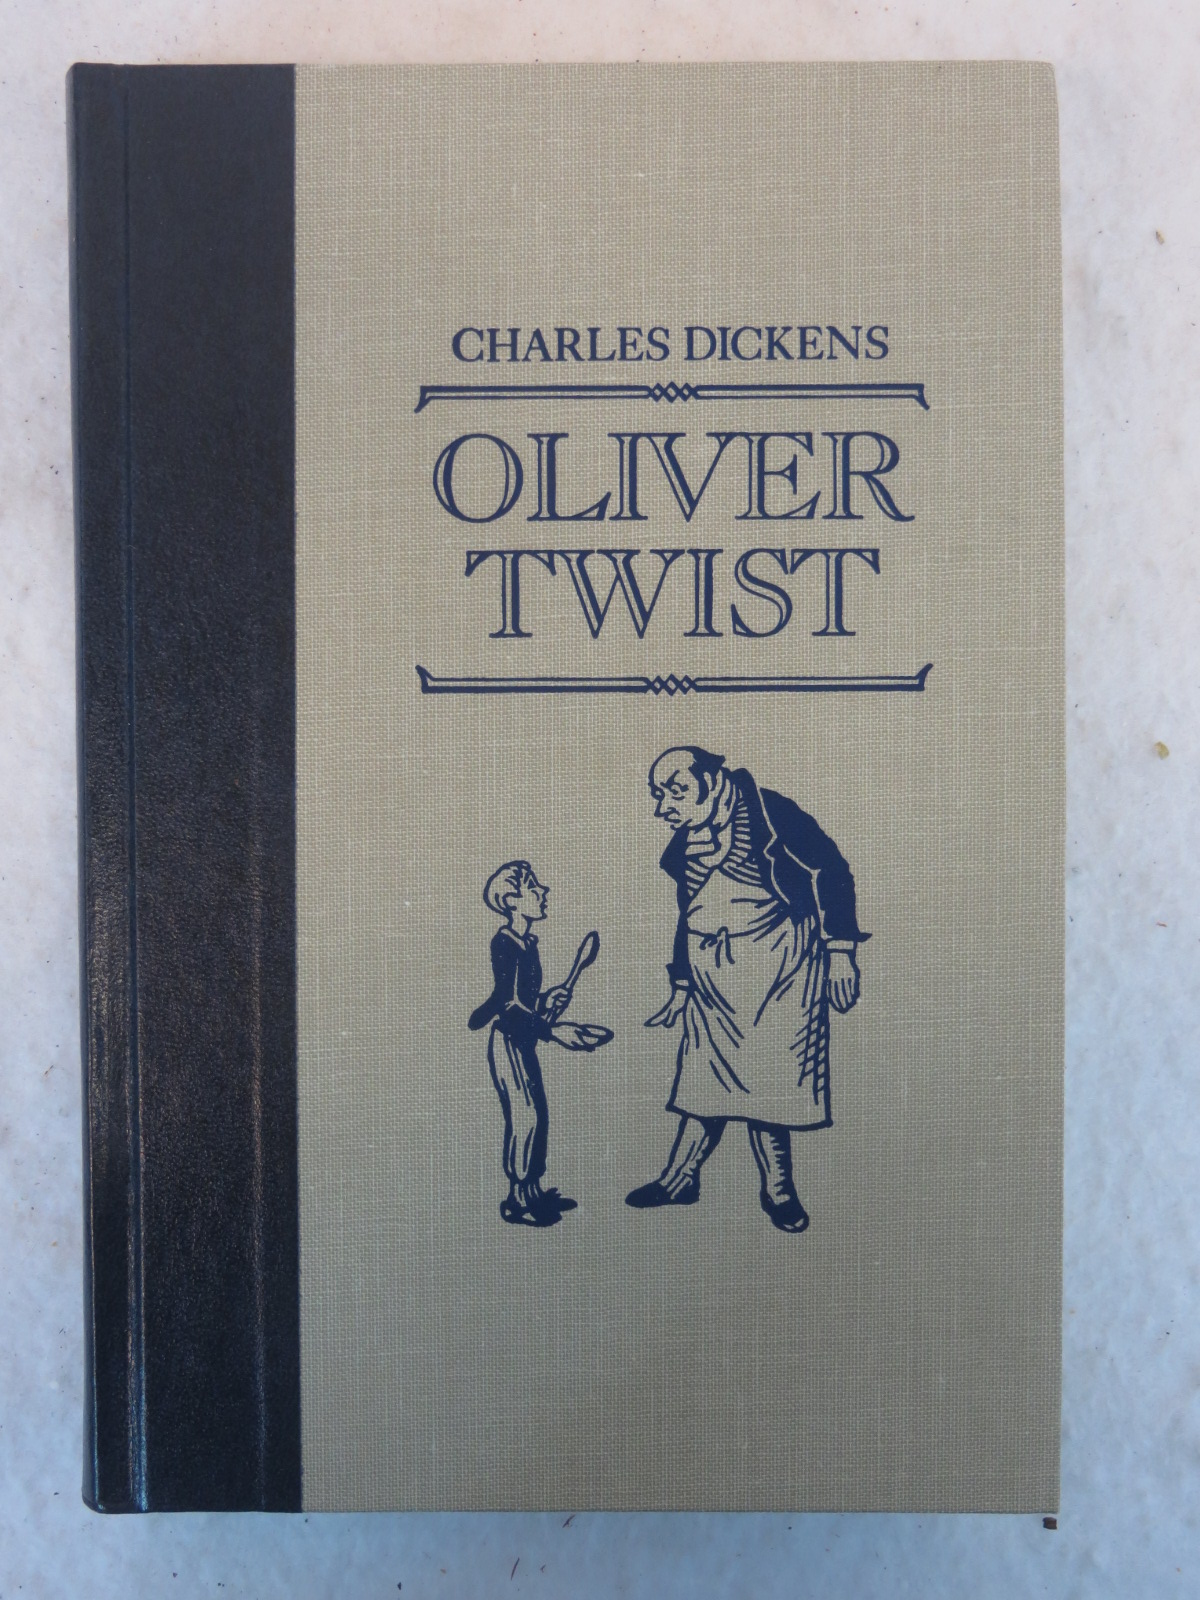 有关以下物品的详细资料: charles dickens oliver twist the world"s